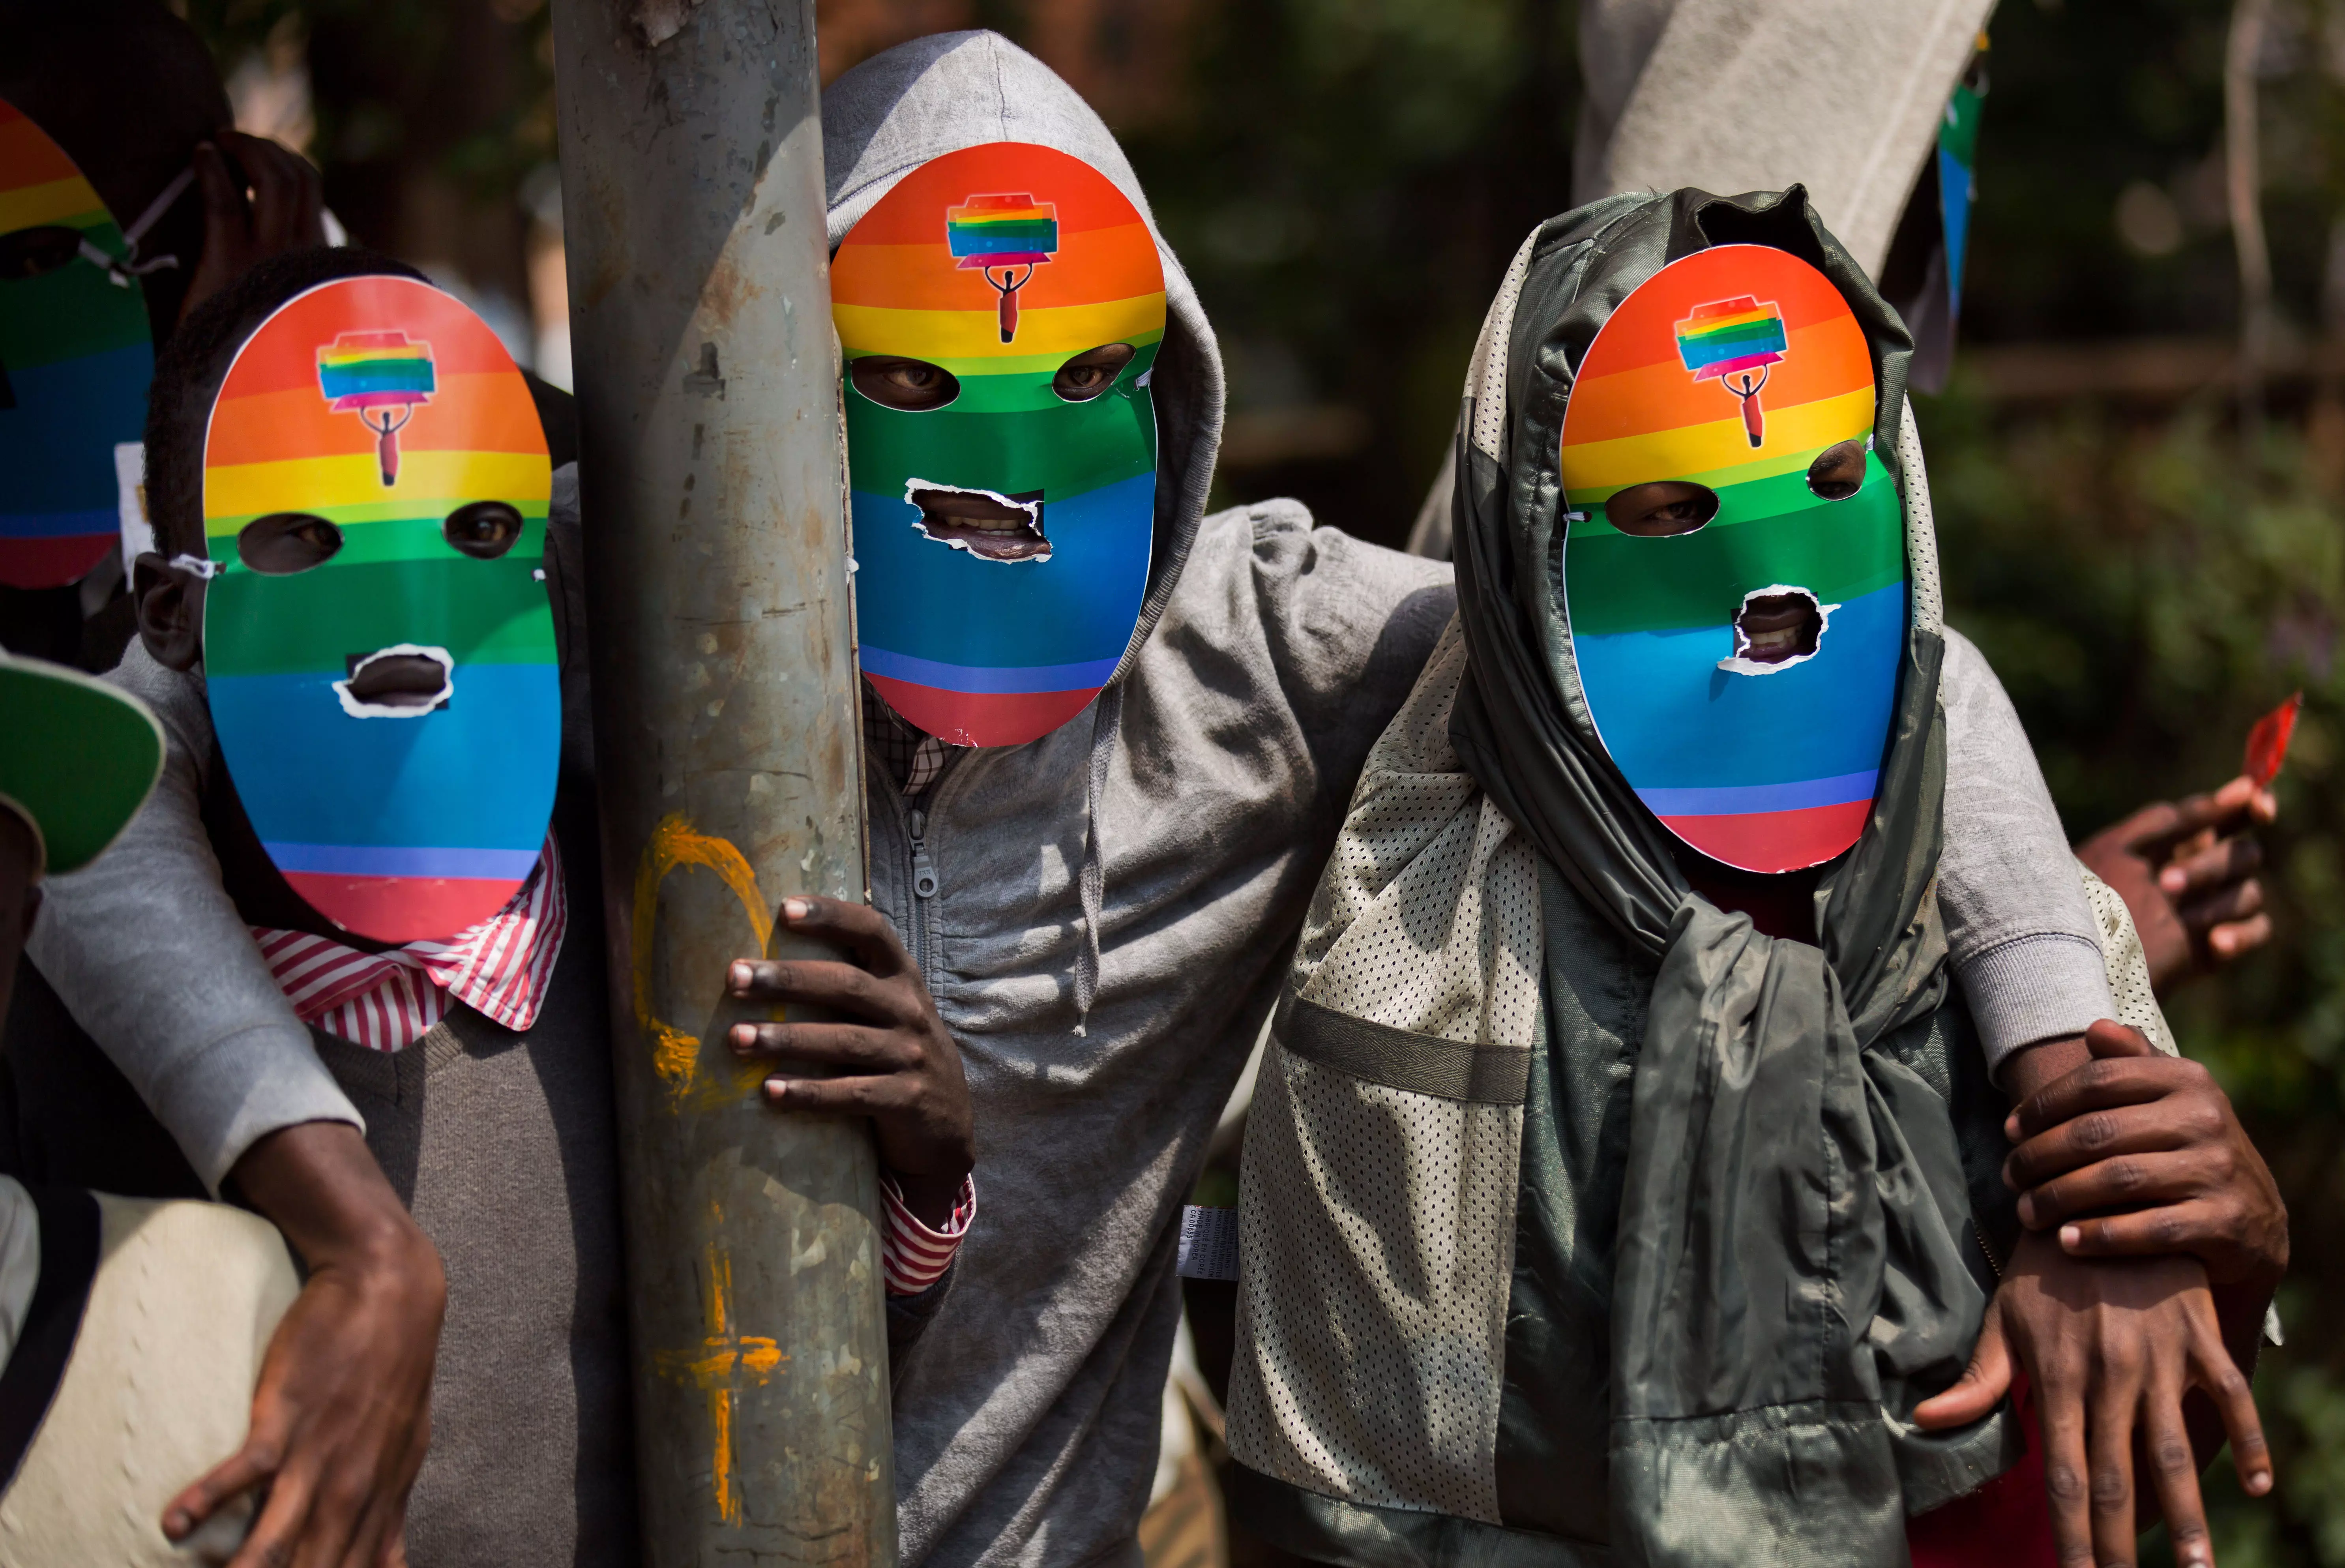 למרות הגינויים בעולם, קולו של ראש הממשלה עדיין לא נשמע. מחאה נגד רדיפת הומואים באוגנדה